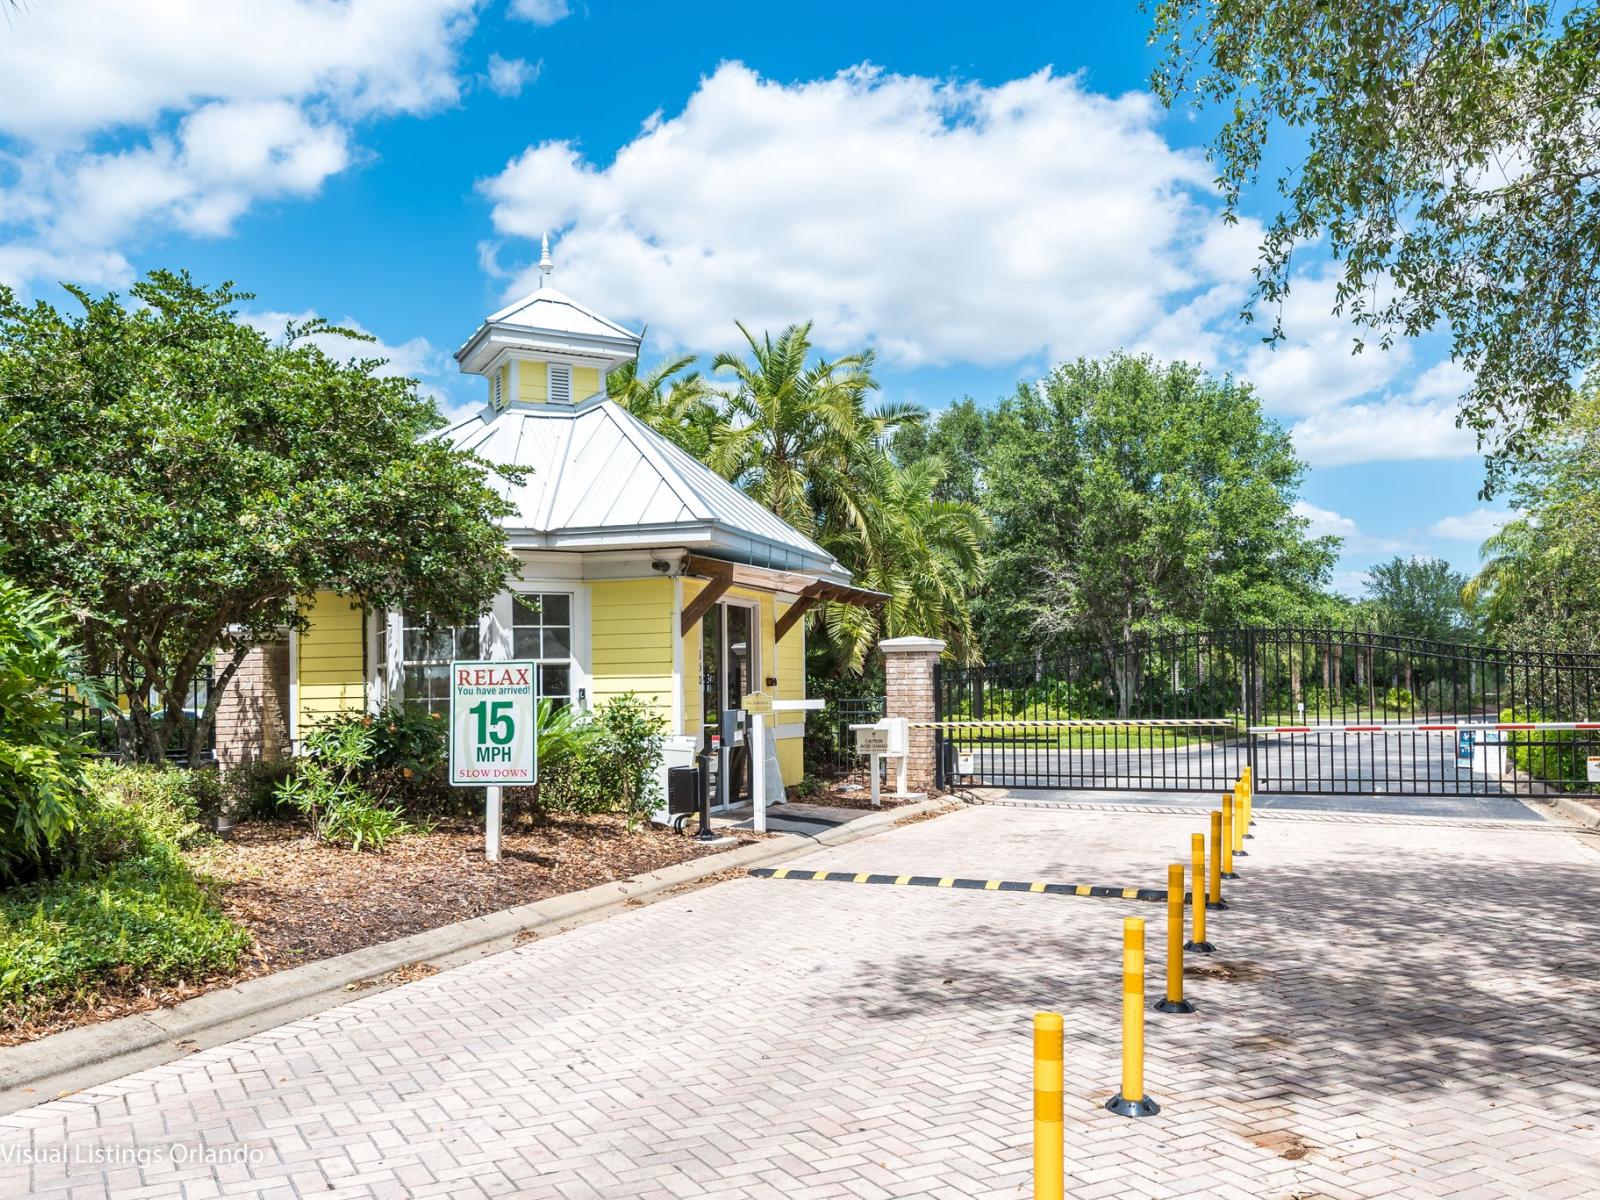 Bahama Bay gated entrance